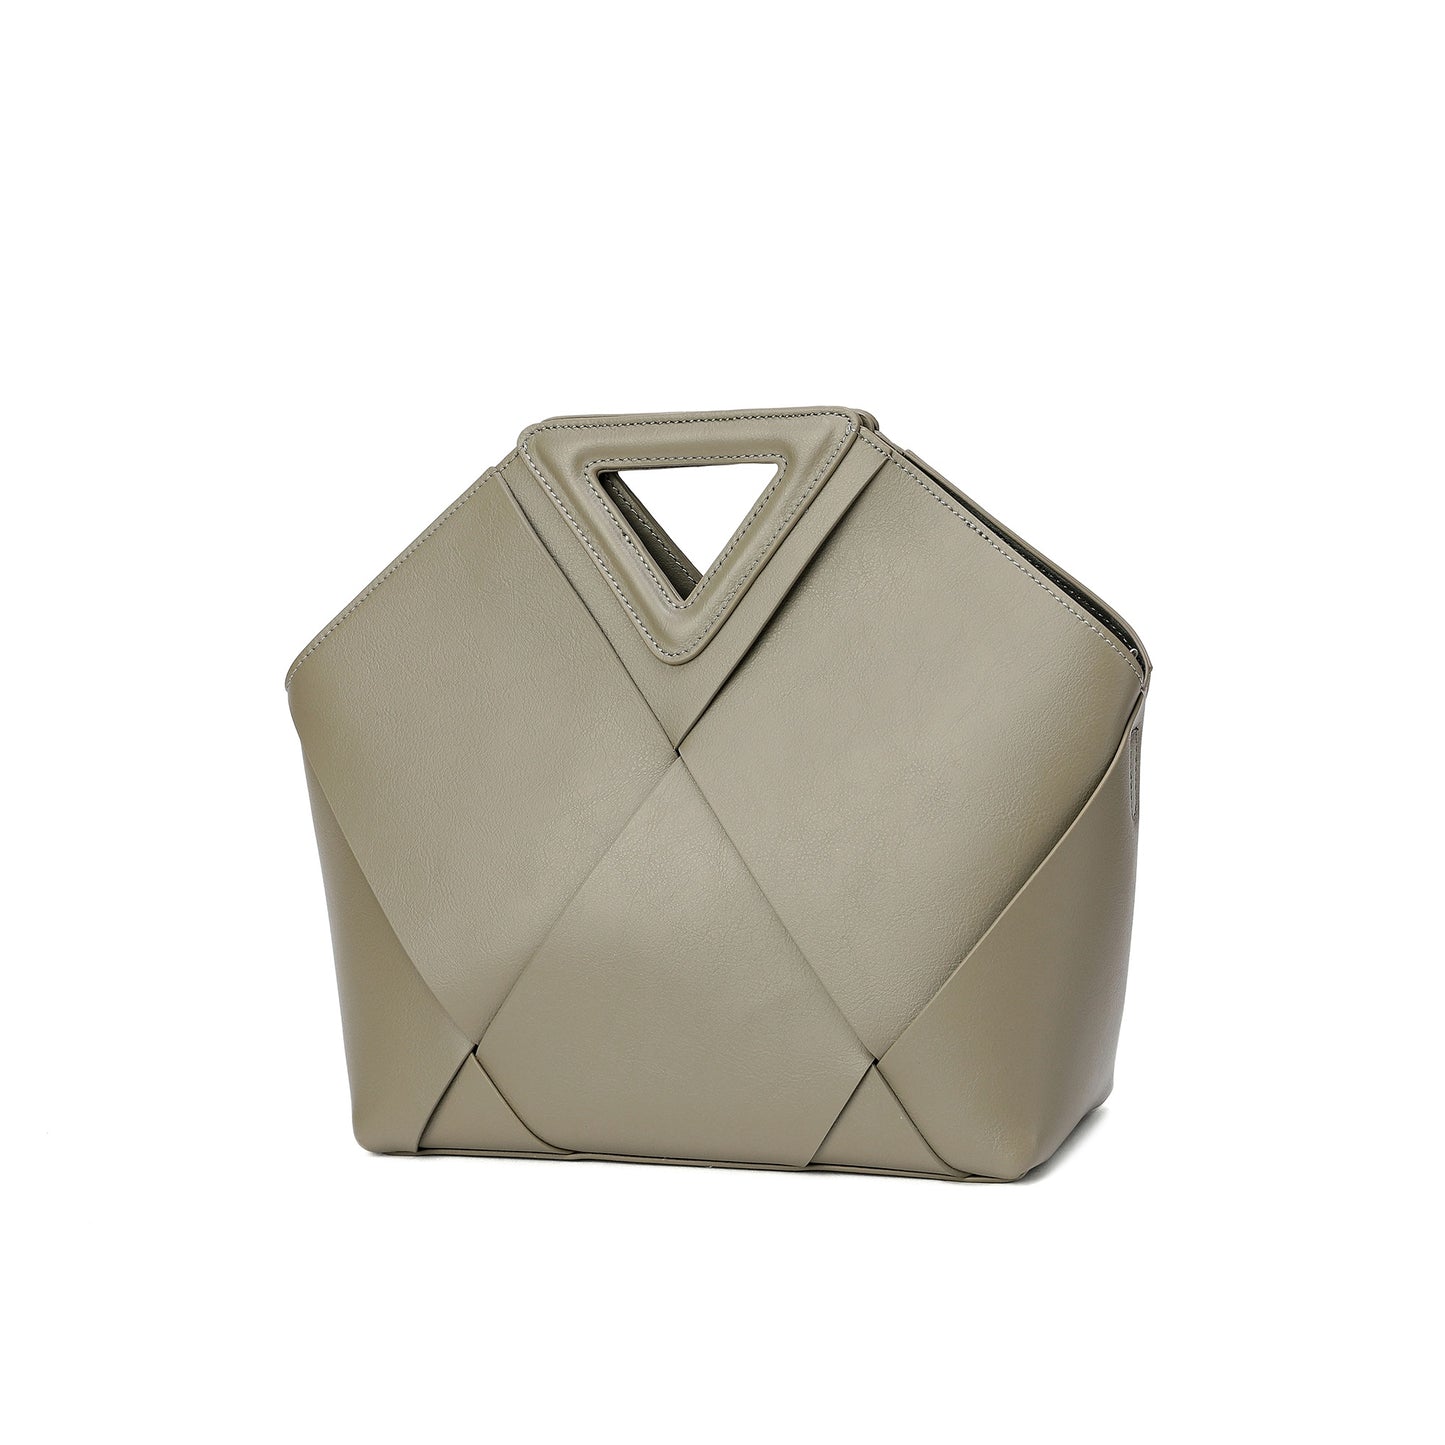 Woven Smooth Leather Satchel/ Shoulder Bag